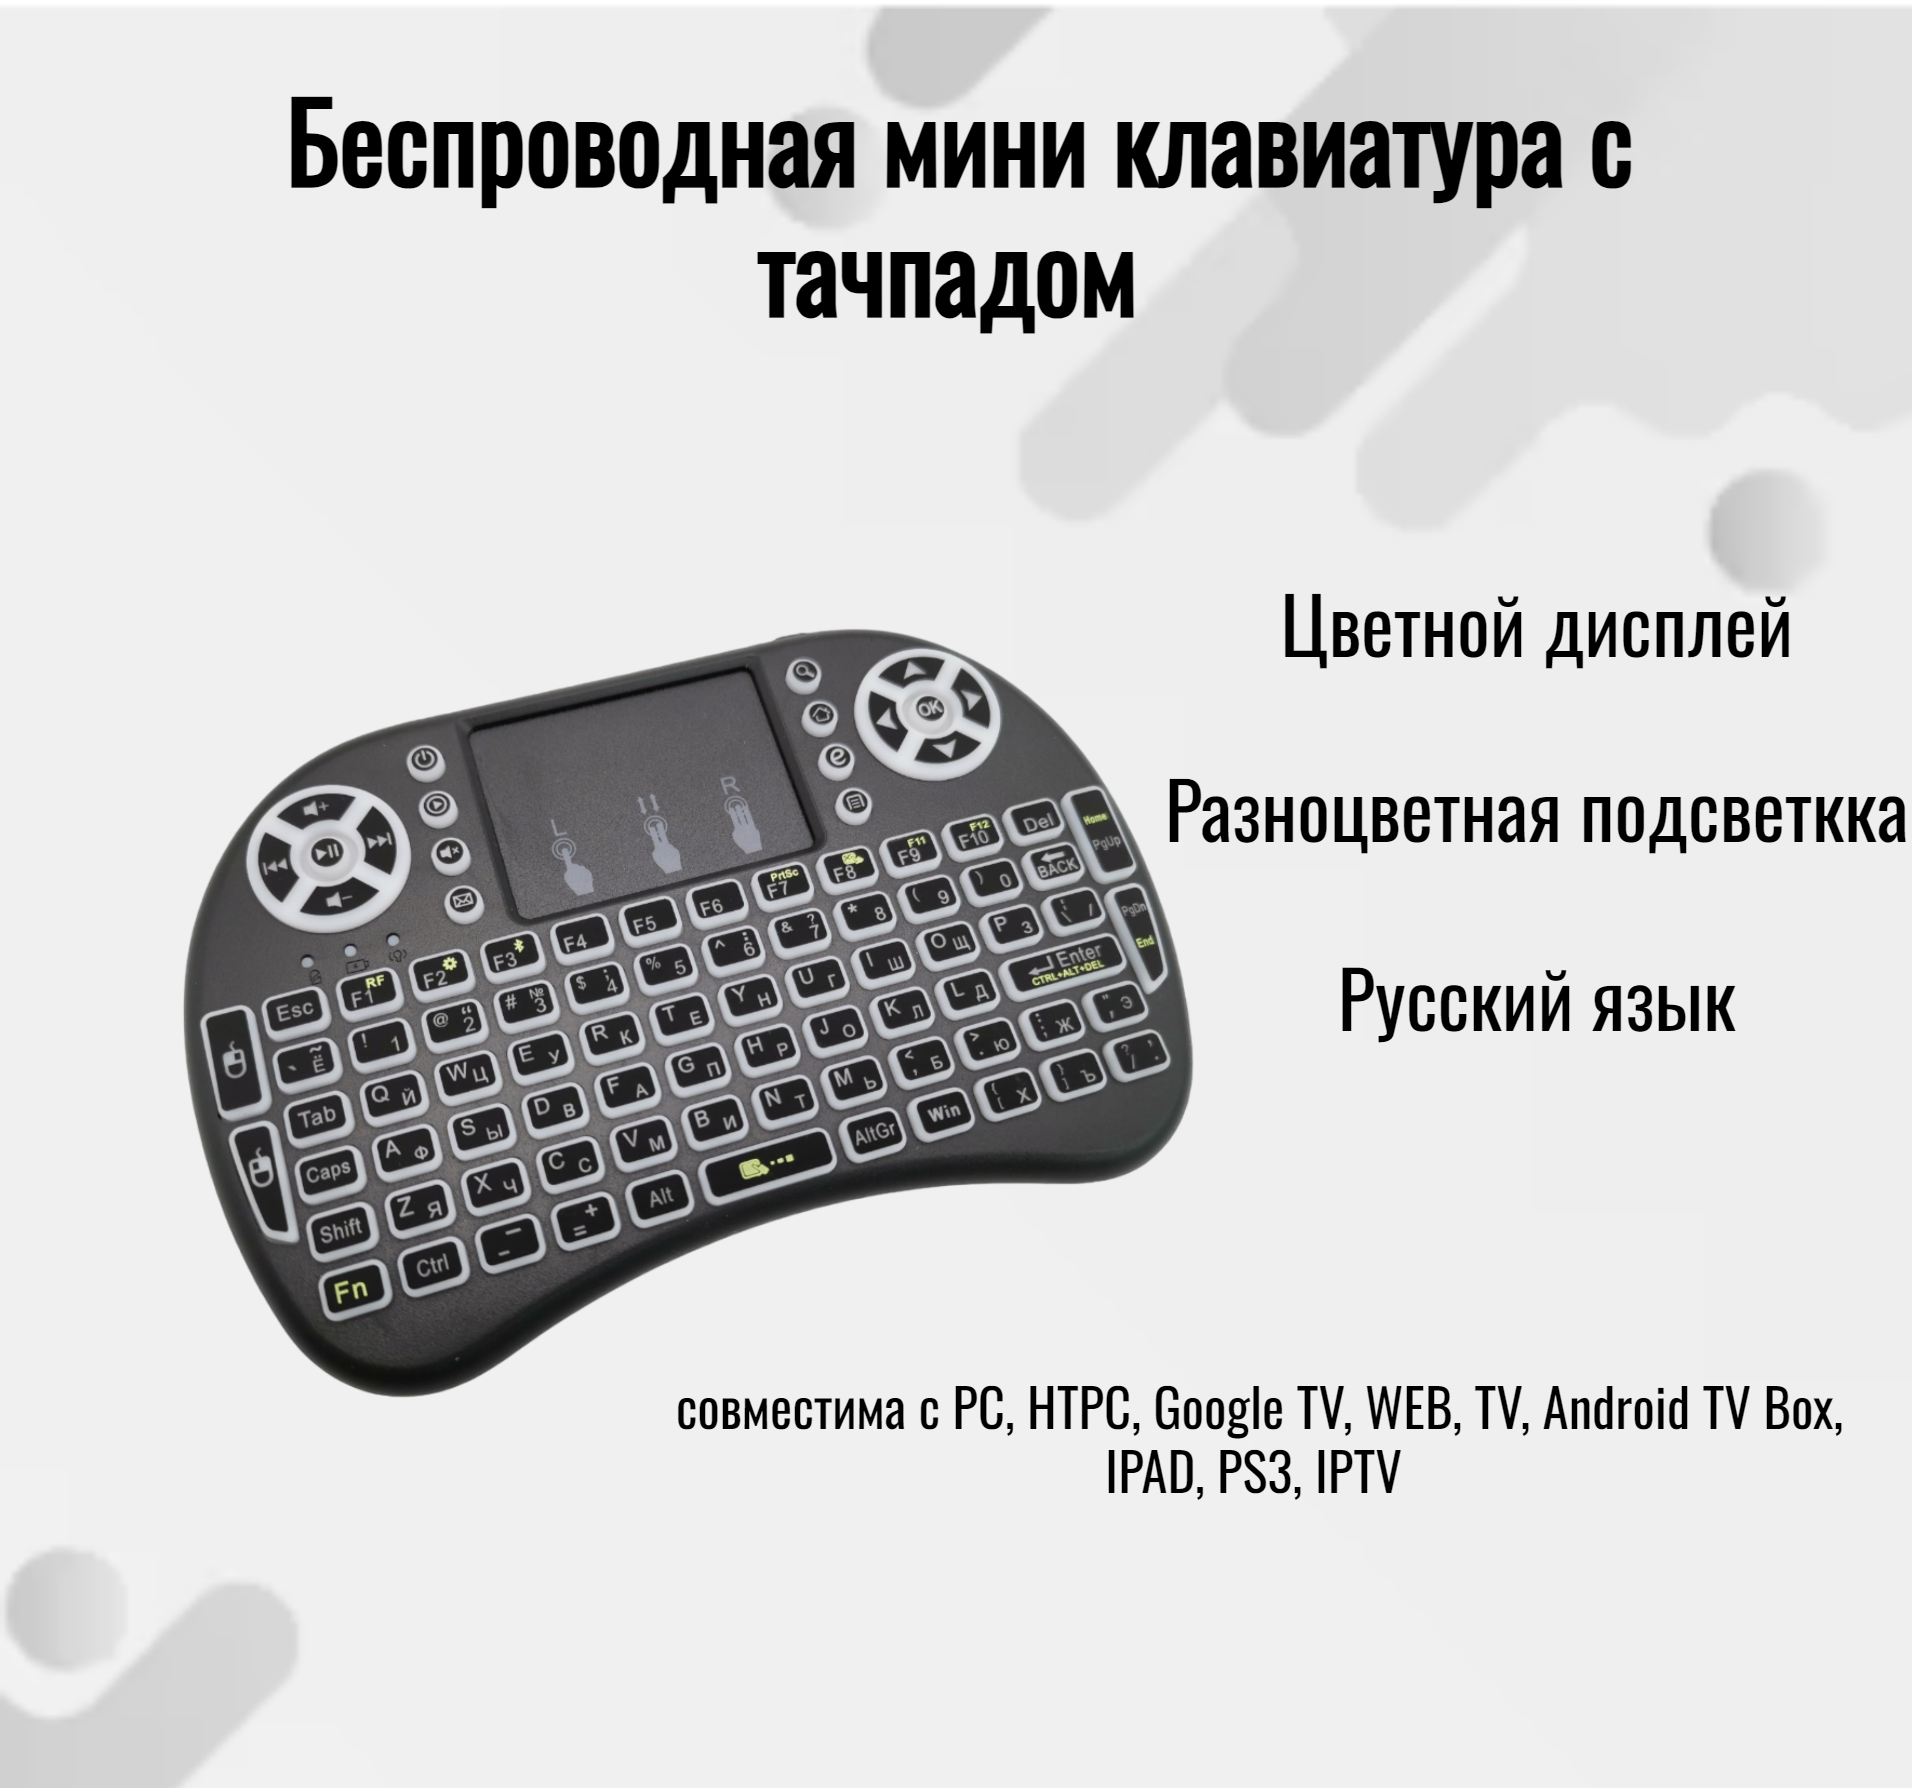 Беспроводная клавиатура Helpico BT-28 OT-PCM25 - купить в Genyx, цена на Мегамаркет